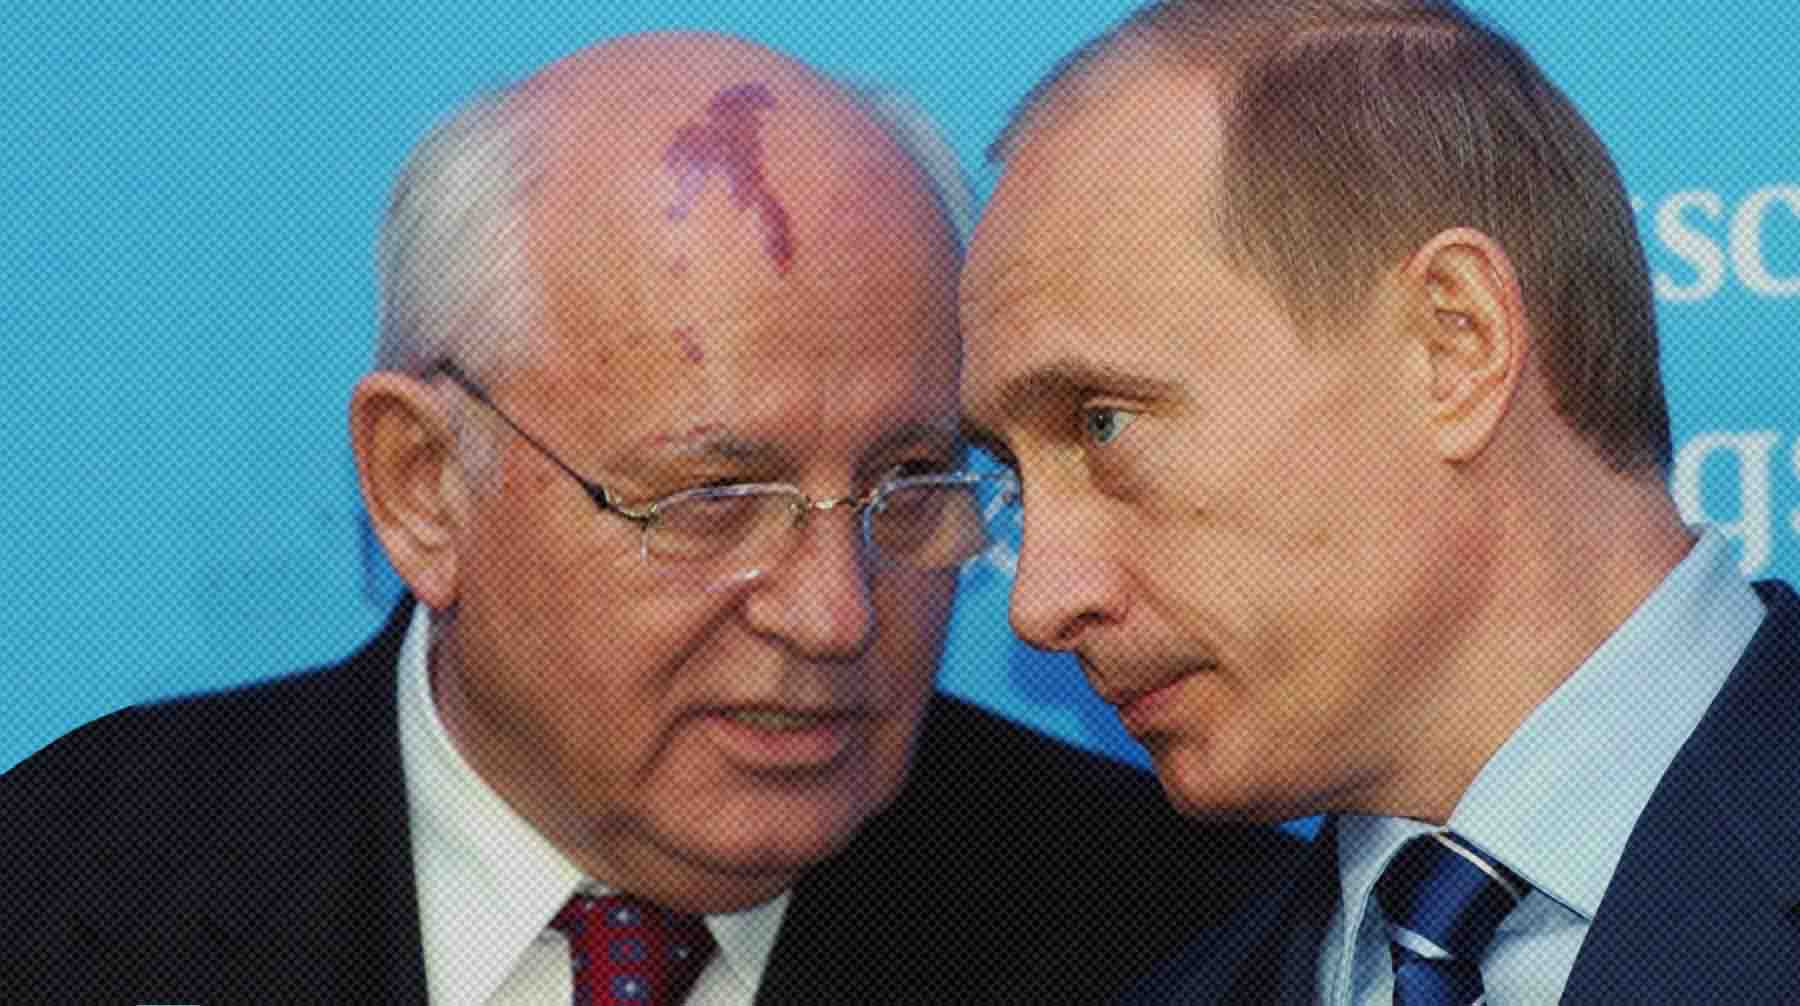 Dailystorm - Путин направил телеграмму близким Горбачева, где назвал его влиятельным политиком, понимавшим важность реформ